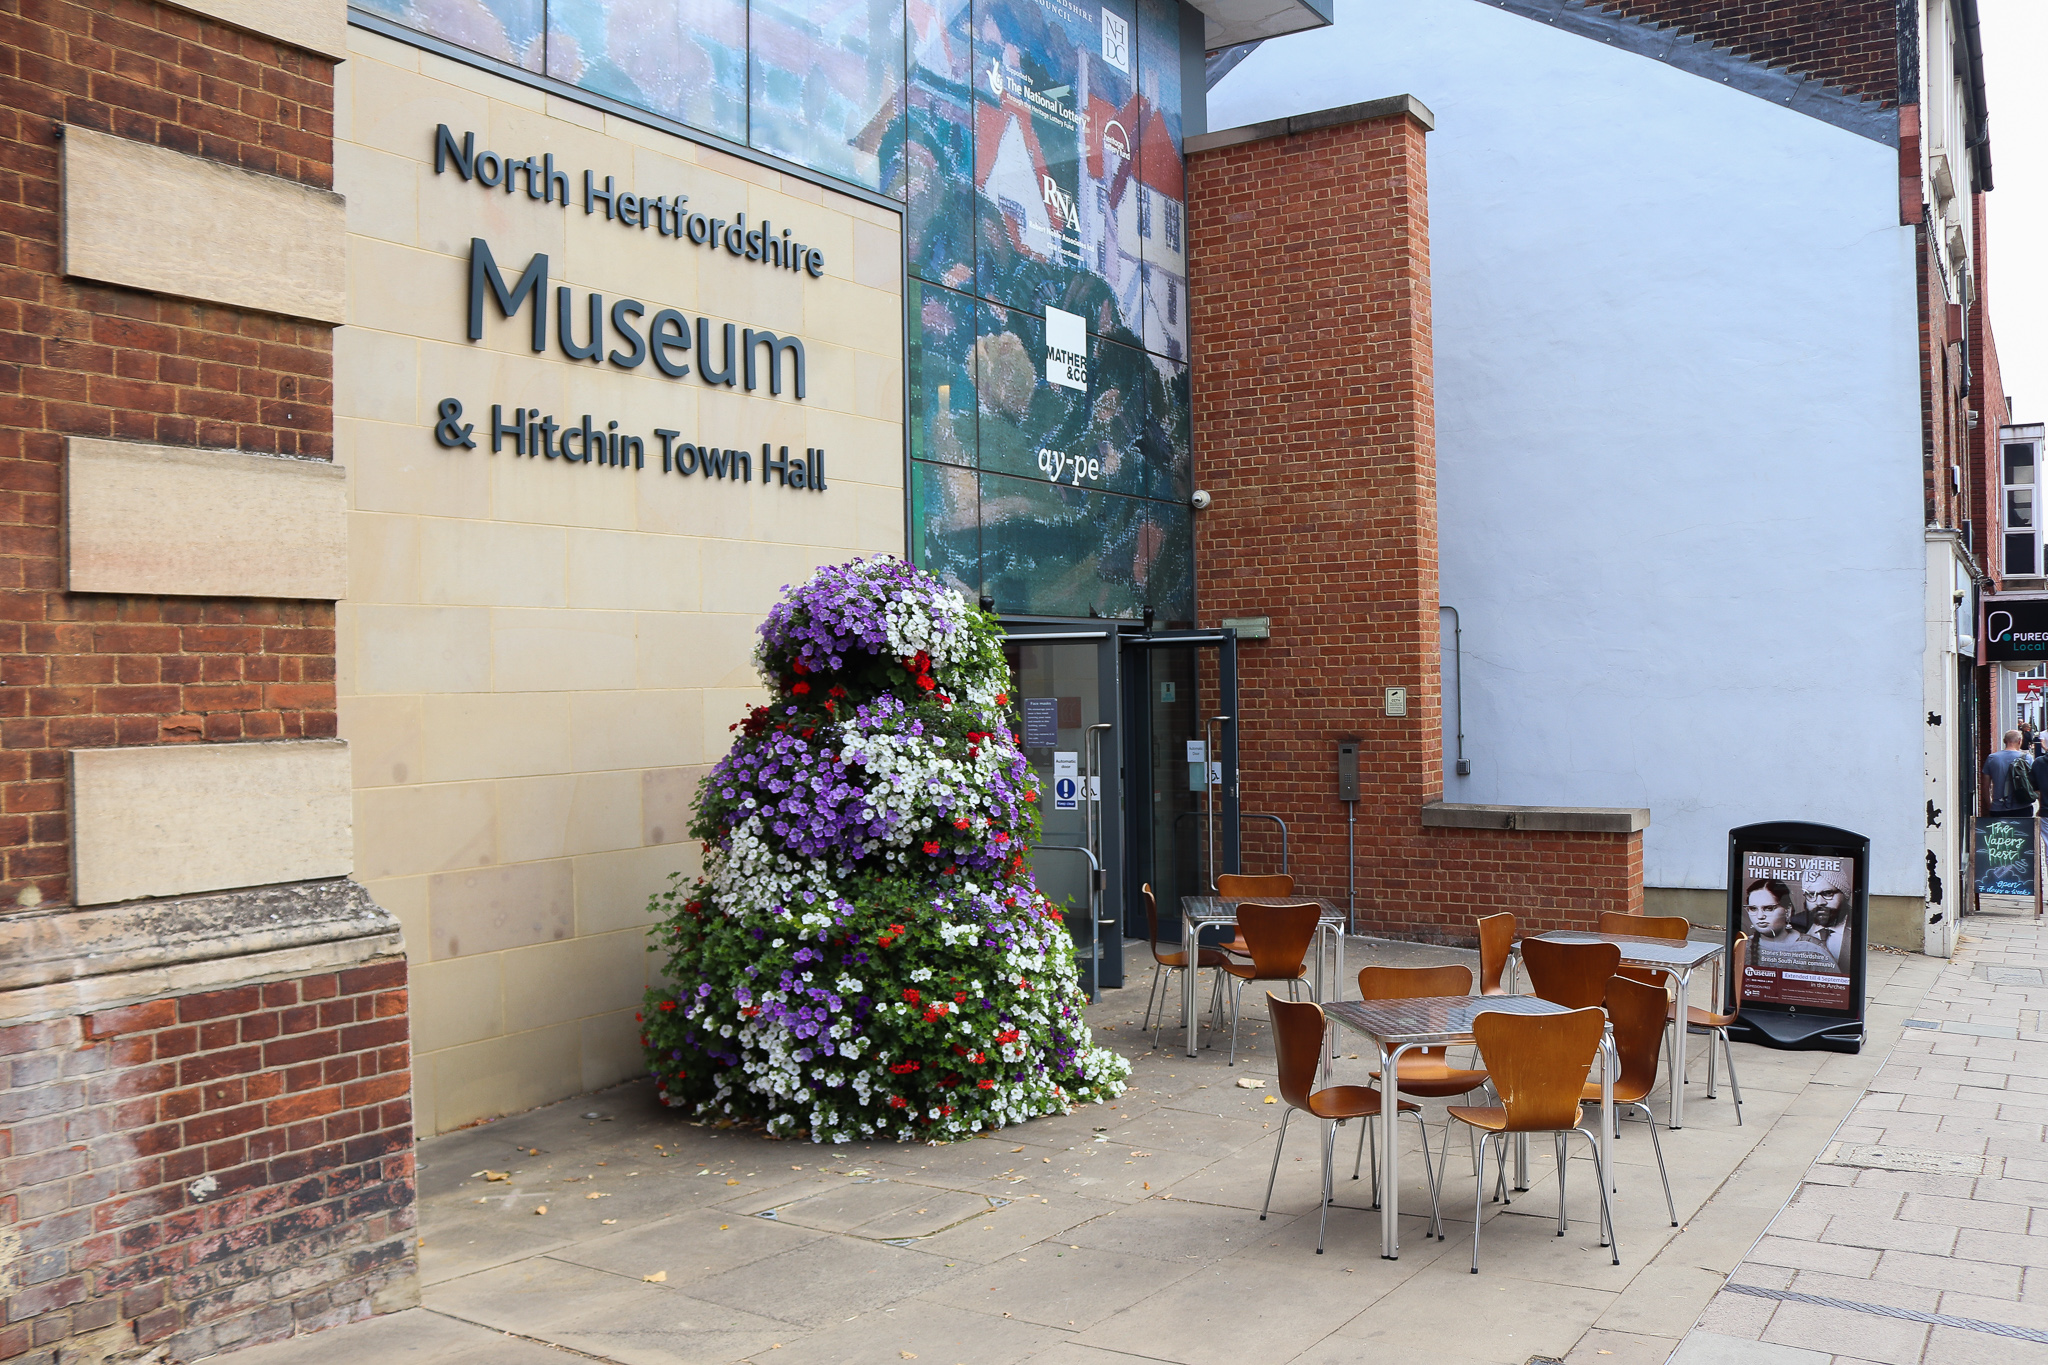 North Hertfordshire Museum & Hitchin Town Hall